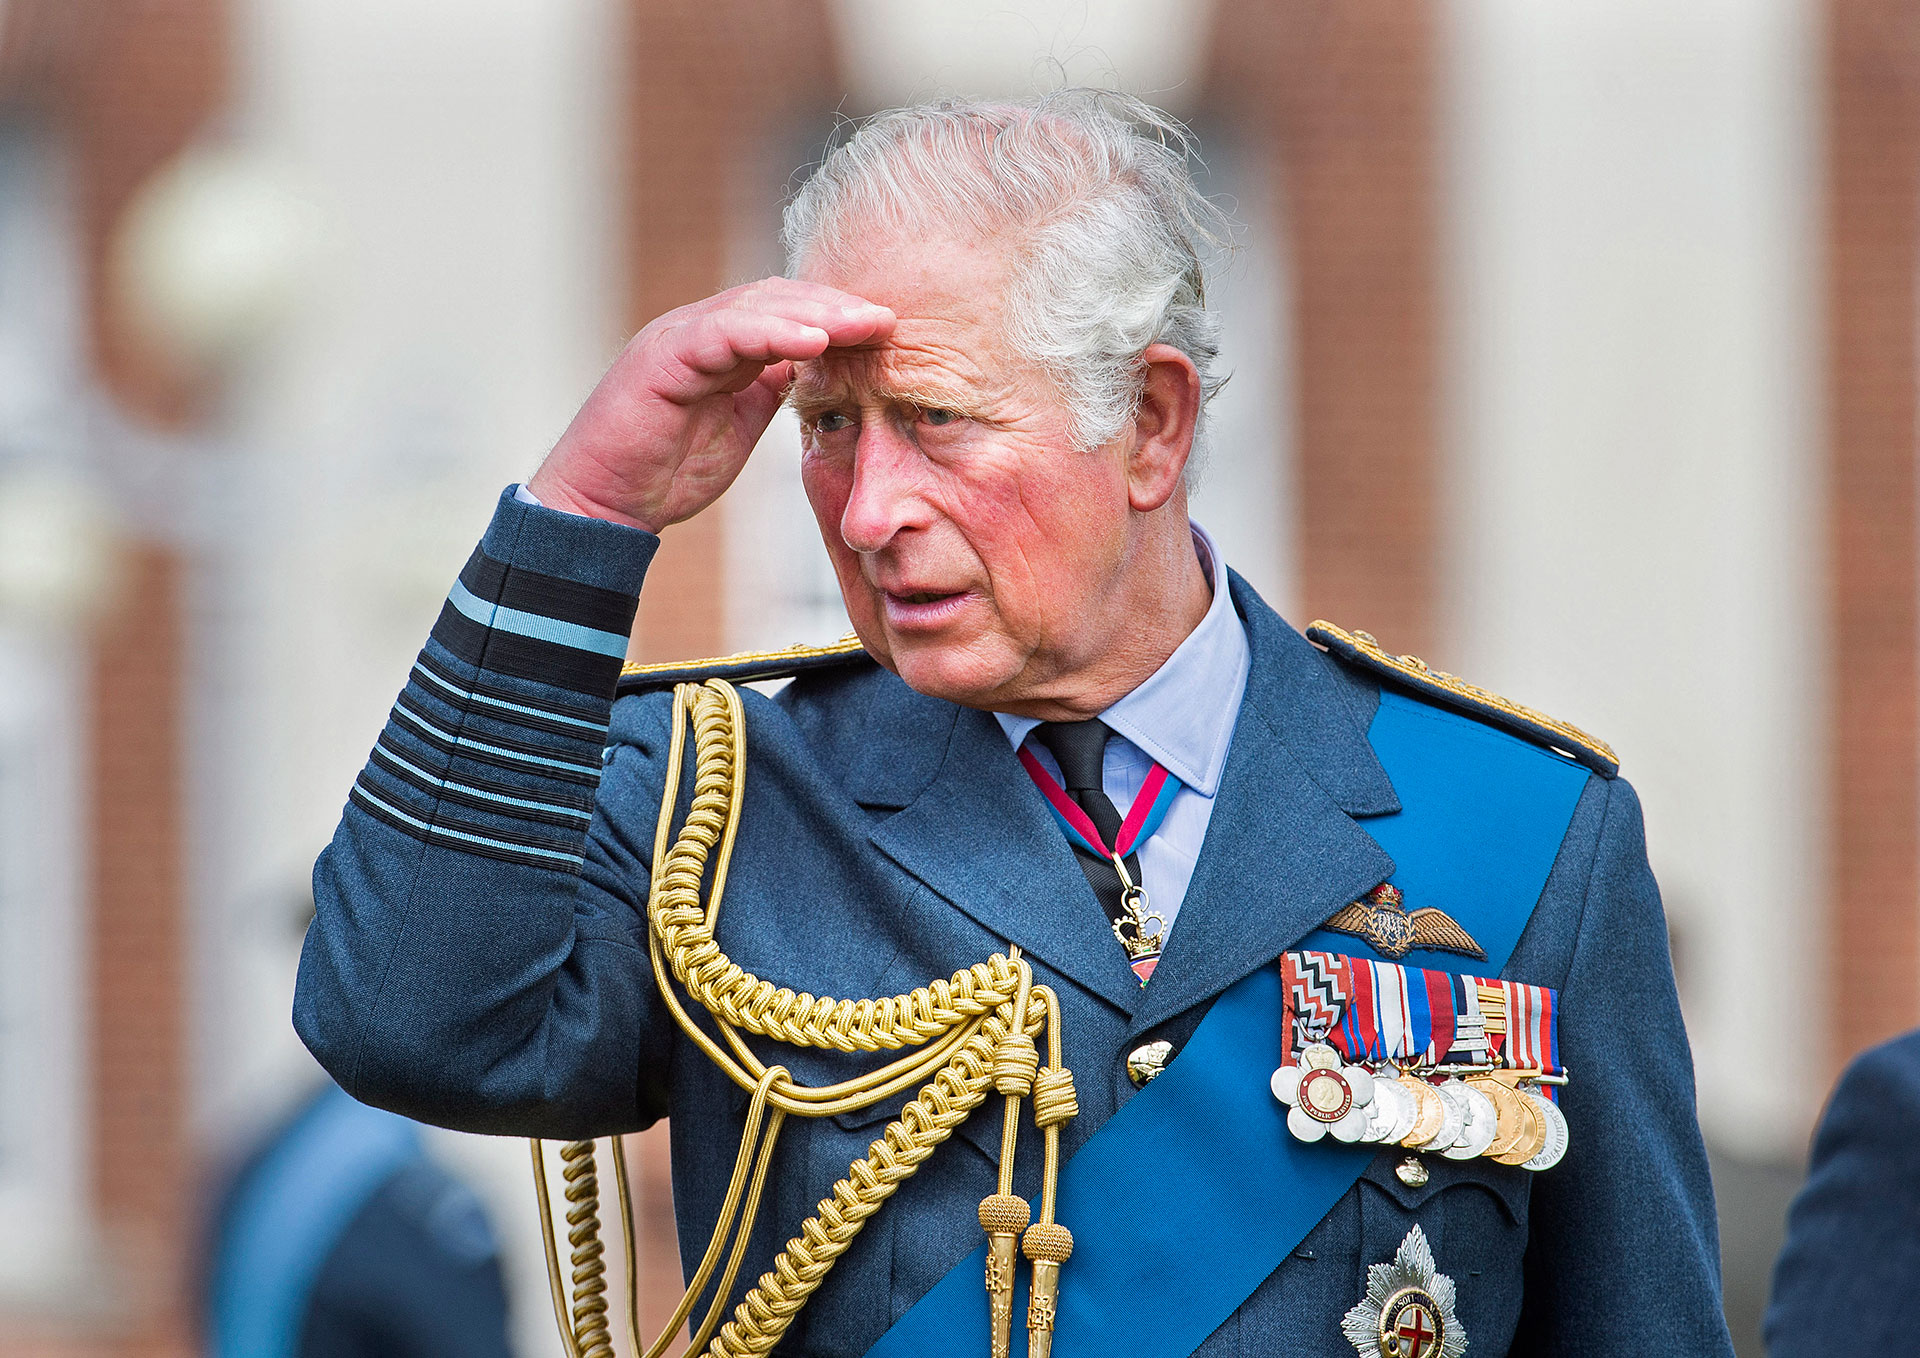 El rey Carlos de Gran Bretaña. (Foto de JULIAN SIMMONDS / PISCINA / AFP)